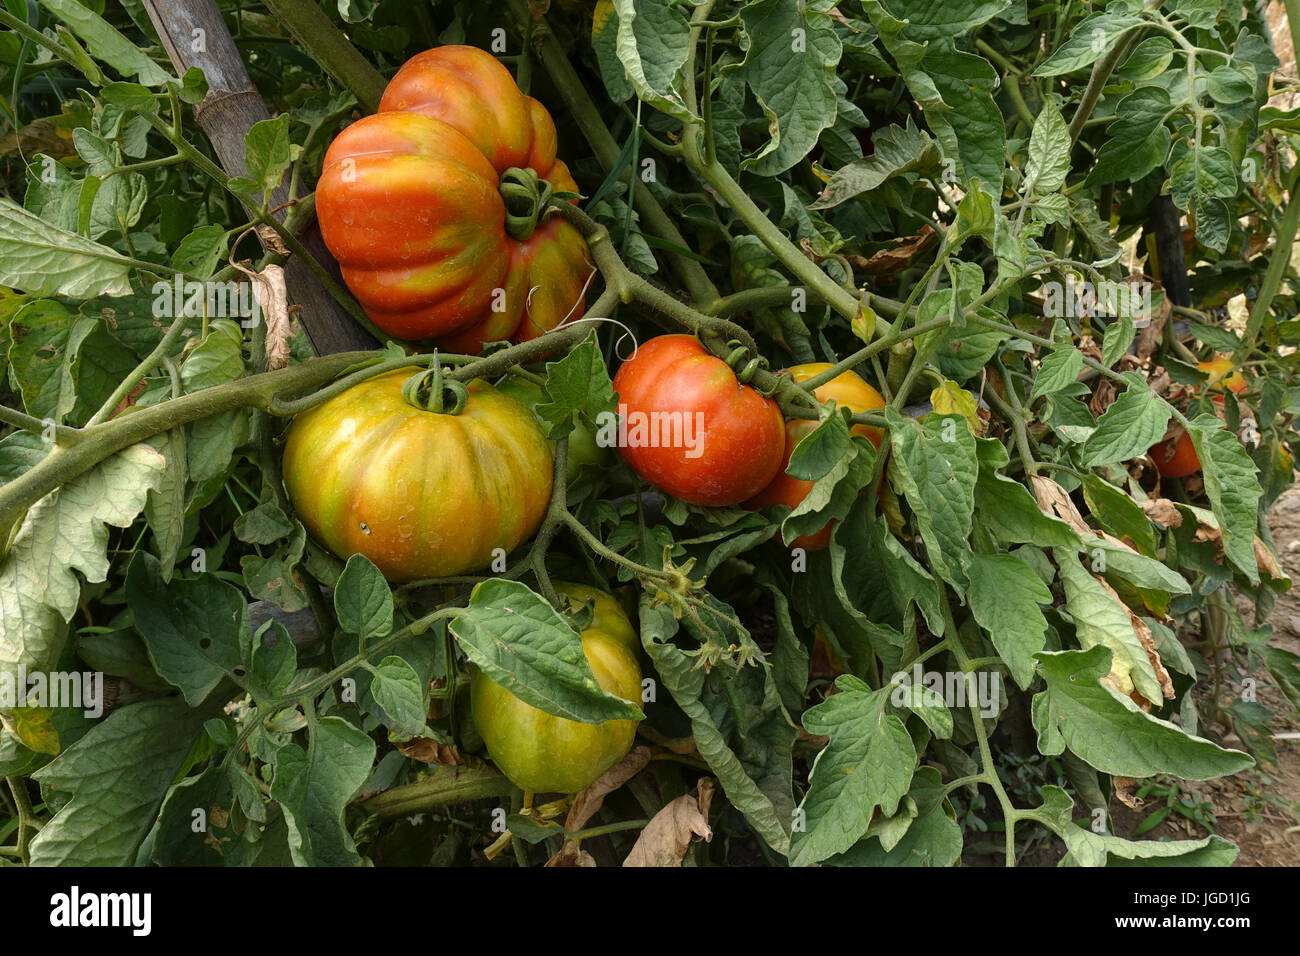 Carni bovine i pomodori maturazione sulla pianta di pomodoro, Solanum lycopersicum, Andalusia, Spagna Foto Stock